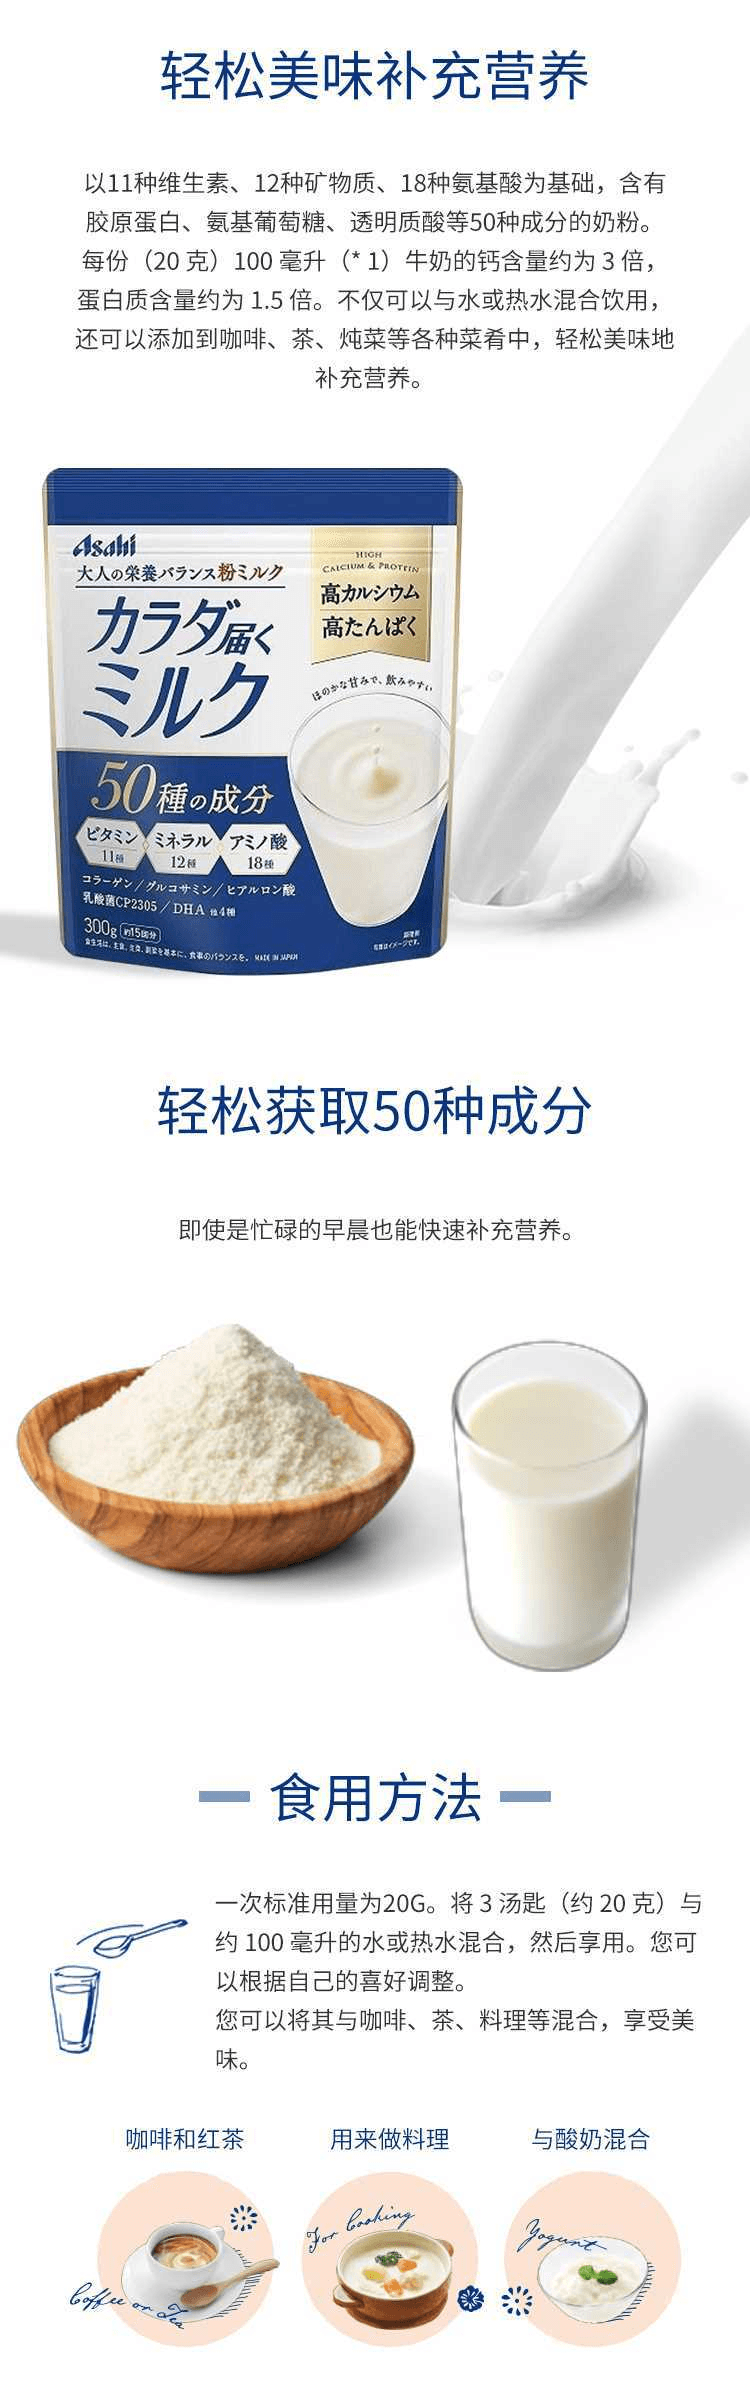 【日本直效郵件】Asahi朝日 50種成分 高鈣高蛋白 成人奶粉 300g